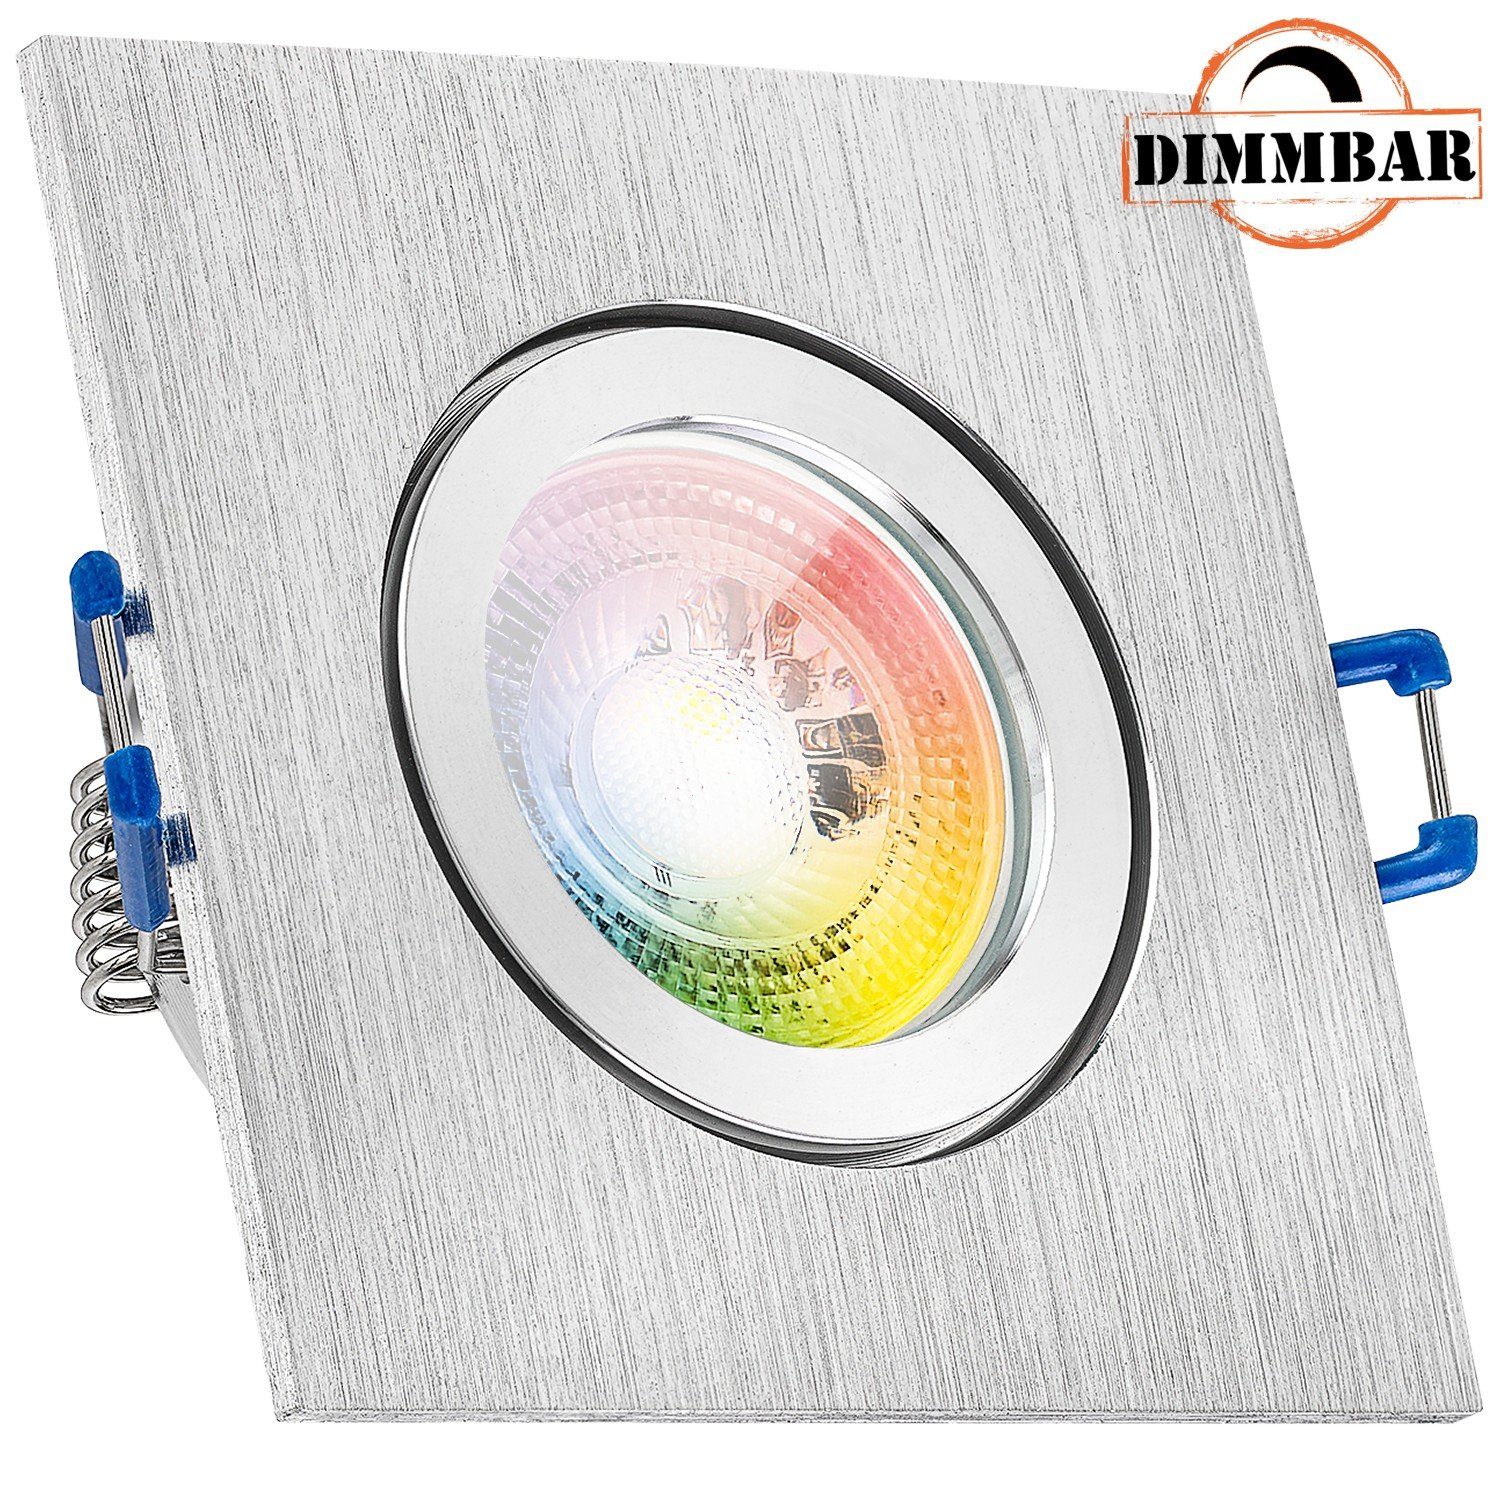 LEDANDO LED Einbaustrahler RGB Set in gebürstet 3W IP44 LED LED Einbaustrahler aluminium mit GU10